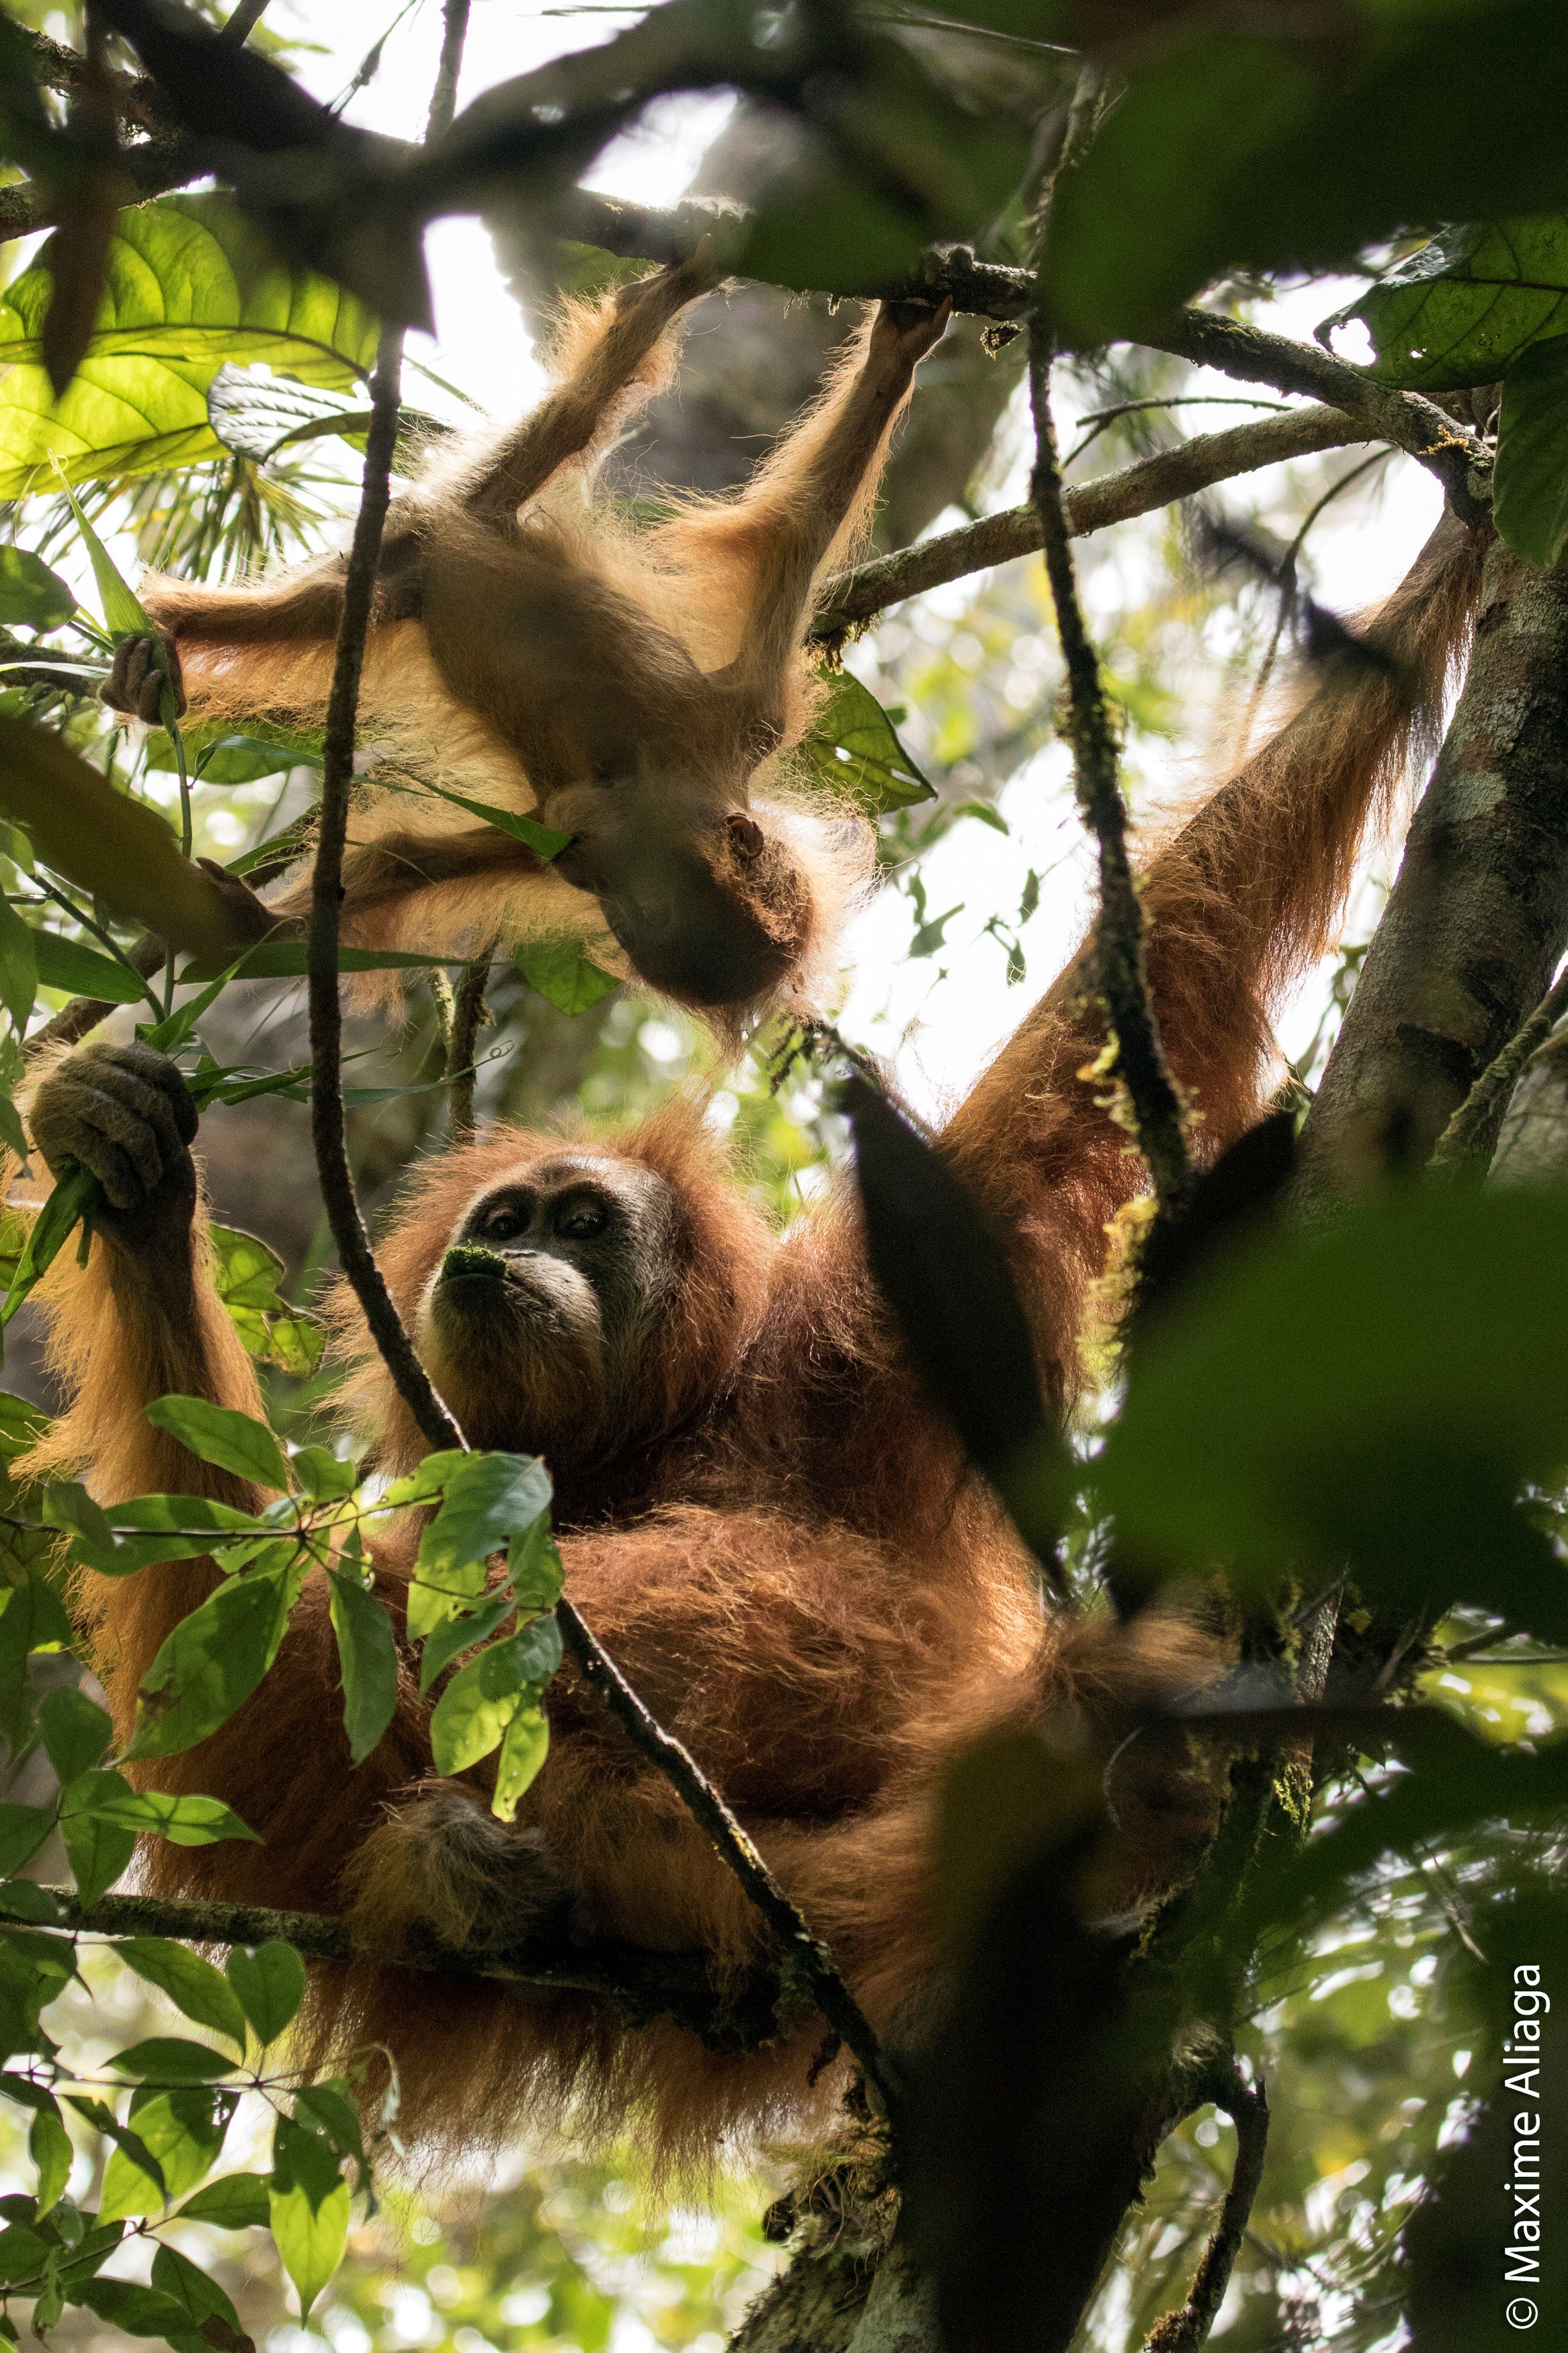 Descubren nueva especie de orangután en selvas indonesias